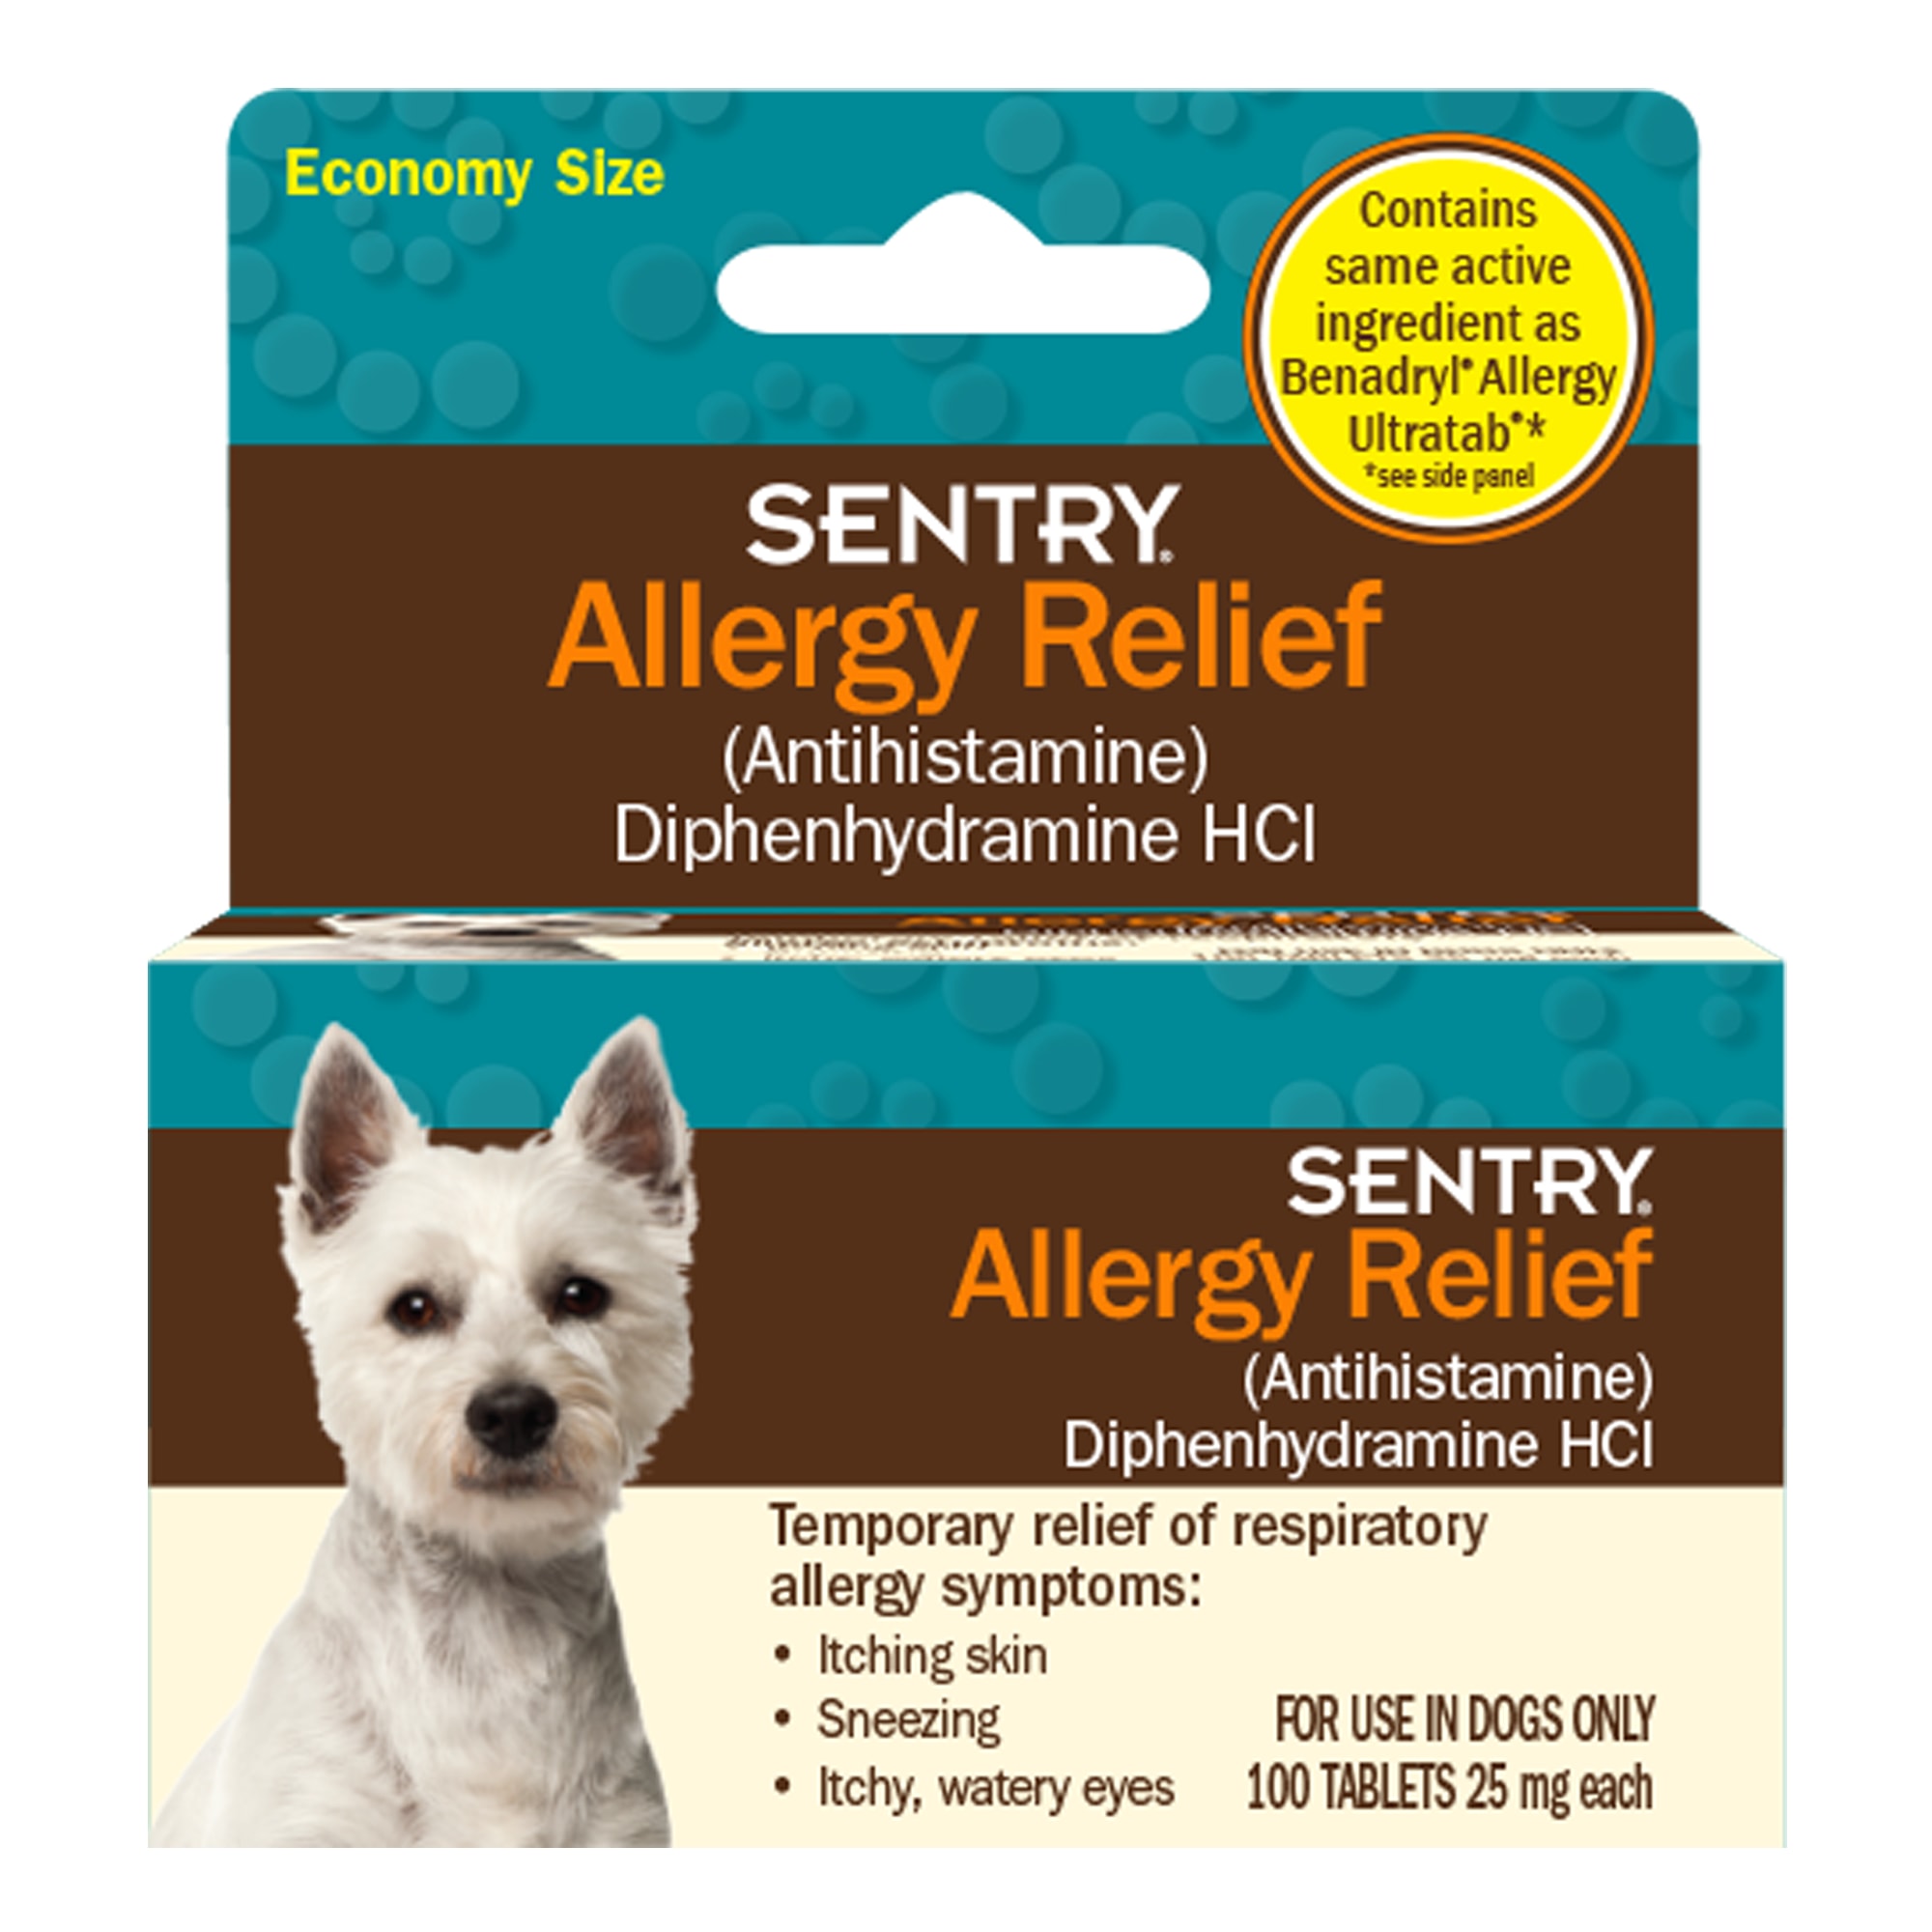 benadryl for dogs allergy